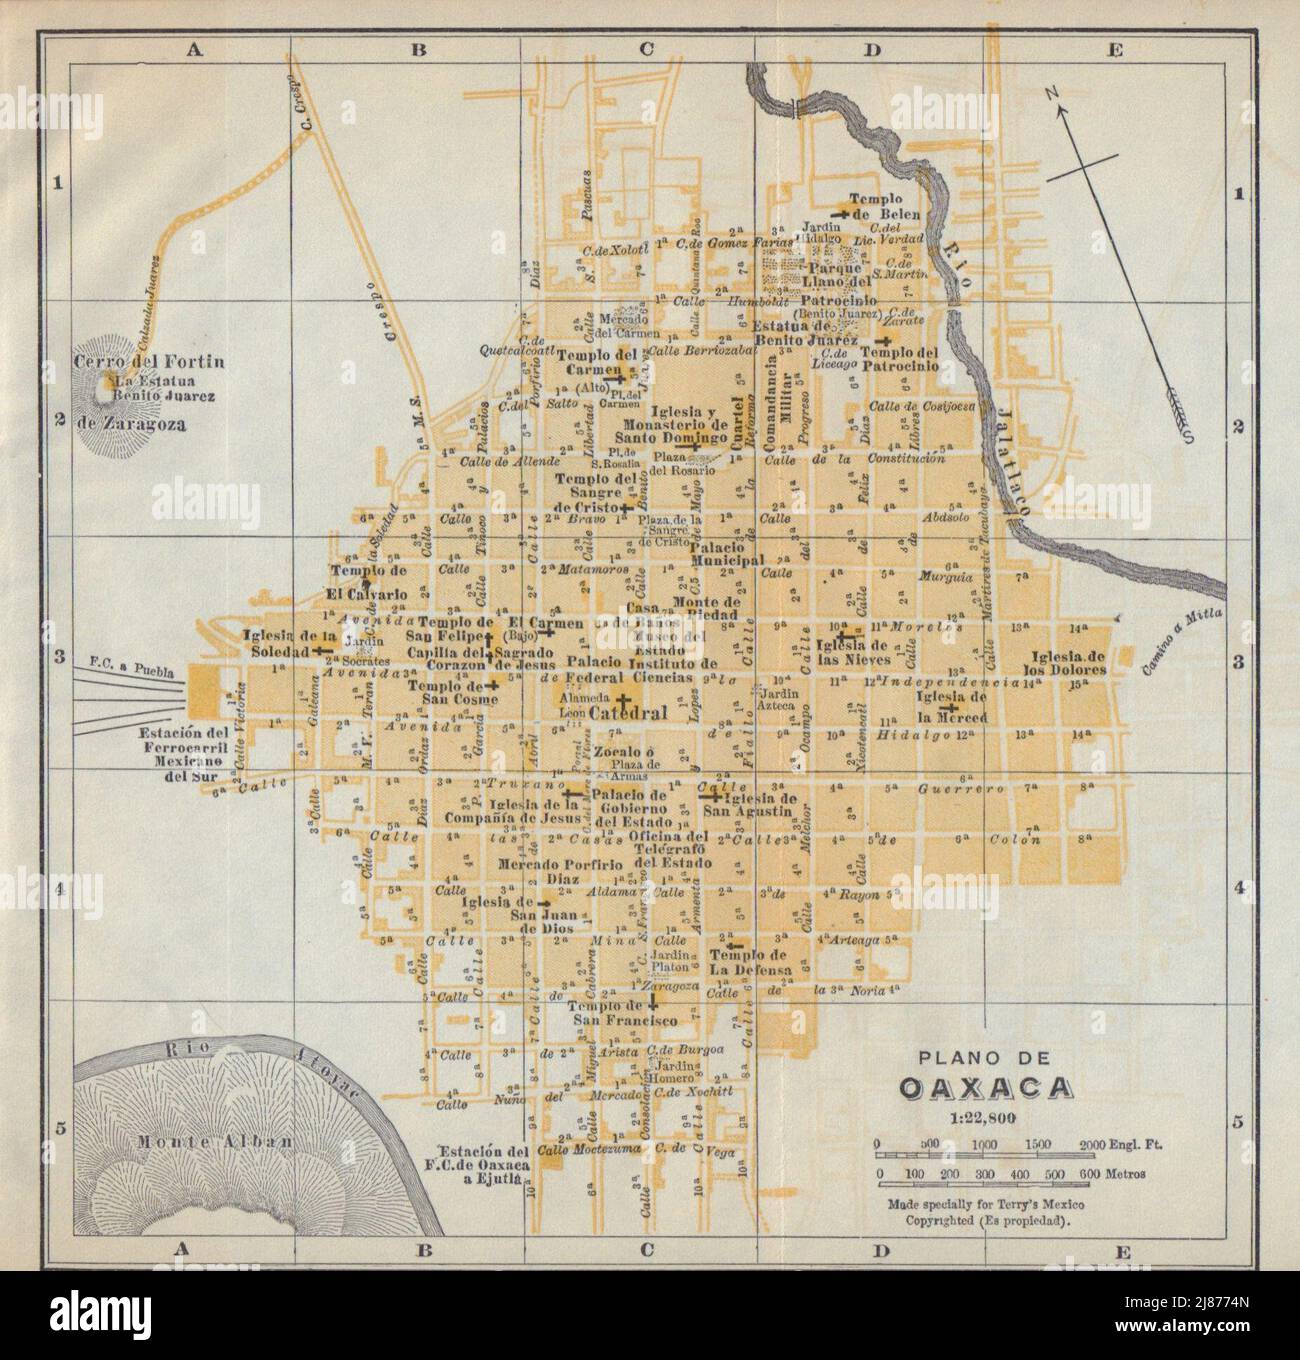 Plano de OAXACA, Mexico. Mapa de la ciudad. City/town plan 1938 old Stock Photo